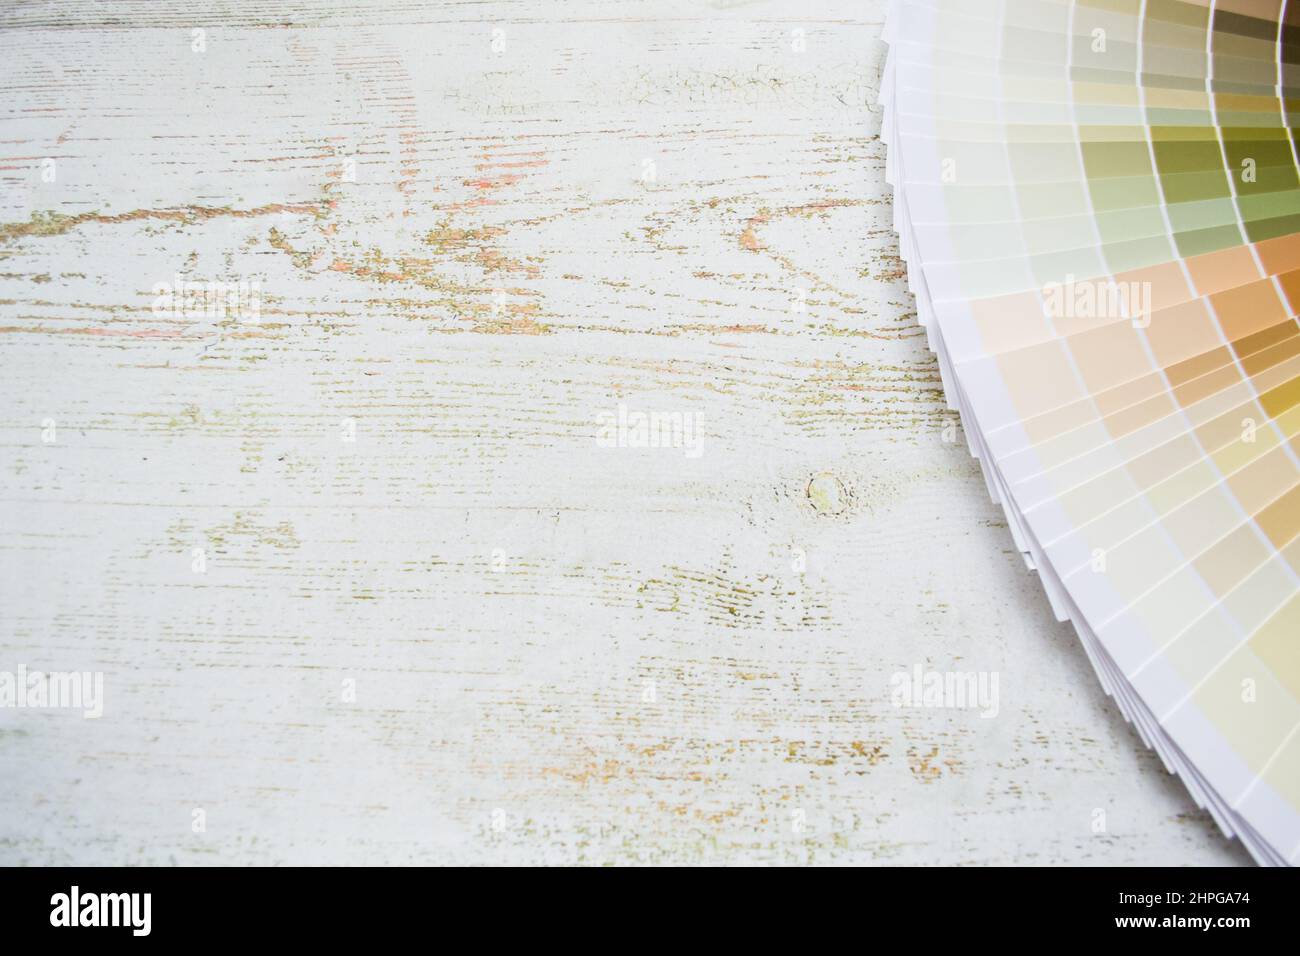 Papier peinture ventilateur échantillons design intérieur peinture murale couleurs naturelles. Arrière-plan en bois, espace de copie. Banque D'Images